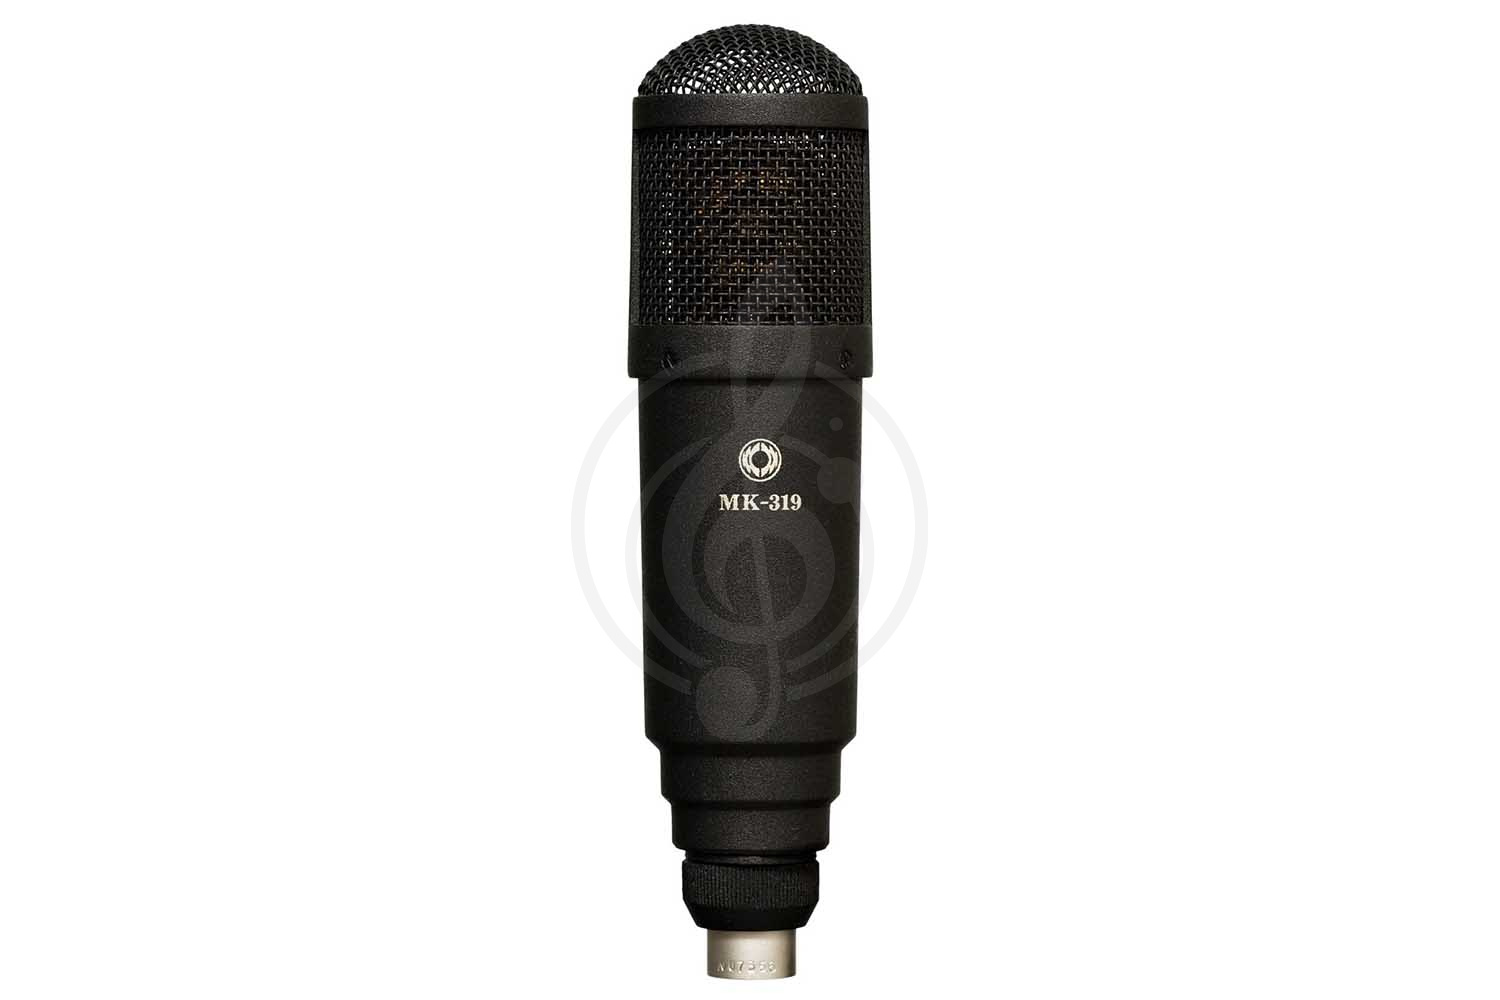 Конденсаторный студийный микрофон Конденсаторные студийные микрофоны Октава Октава МК-319-b - студийный конденсаторный микрофон МК-319-b - фото 1